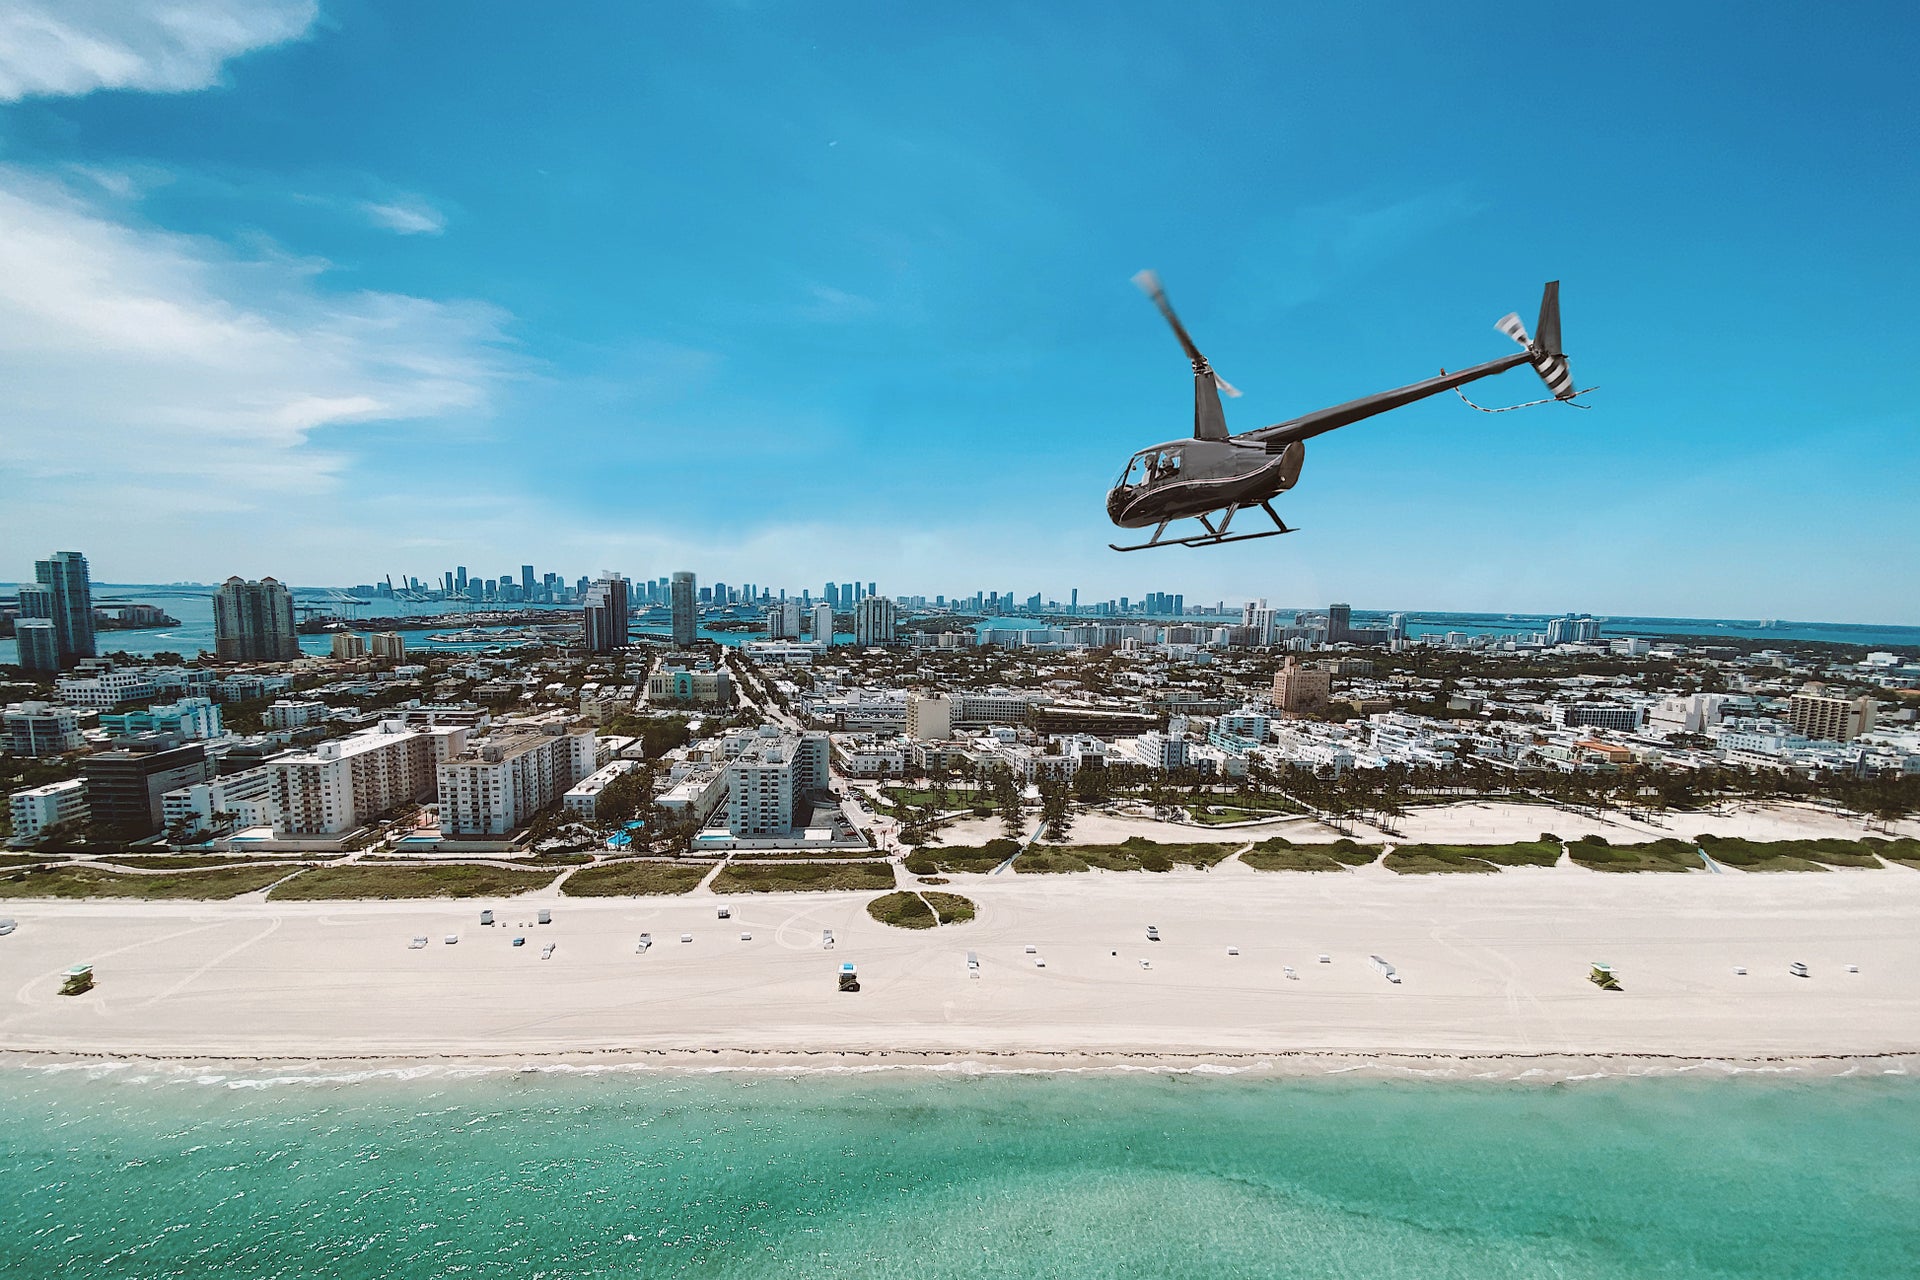 Vol en hélicoptère au-dessus de Miami